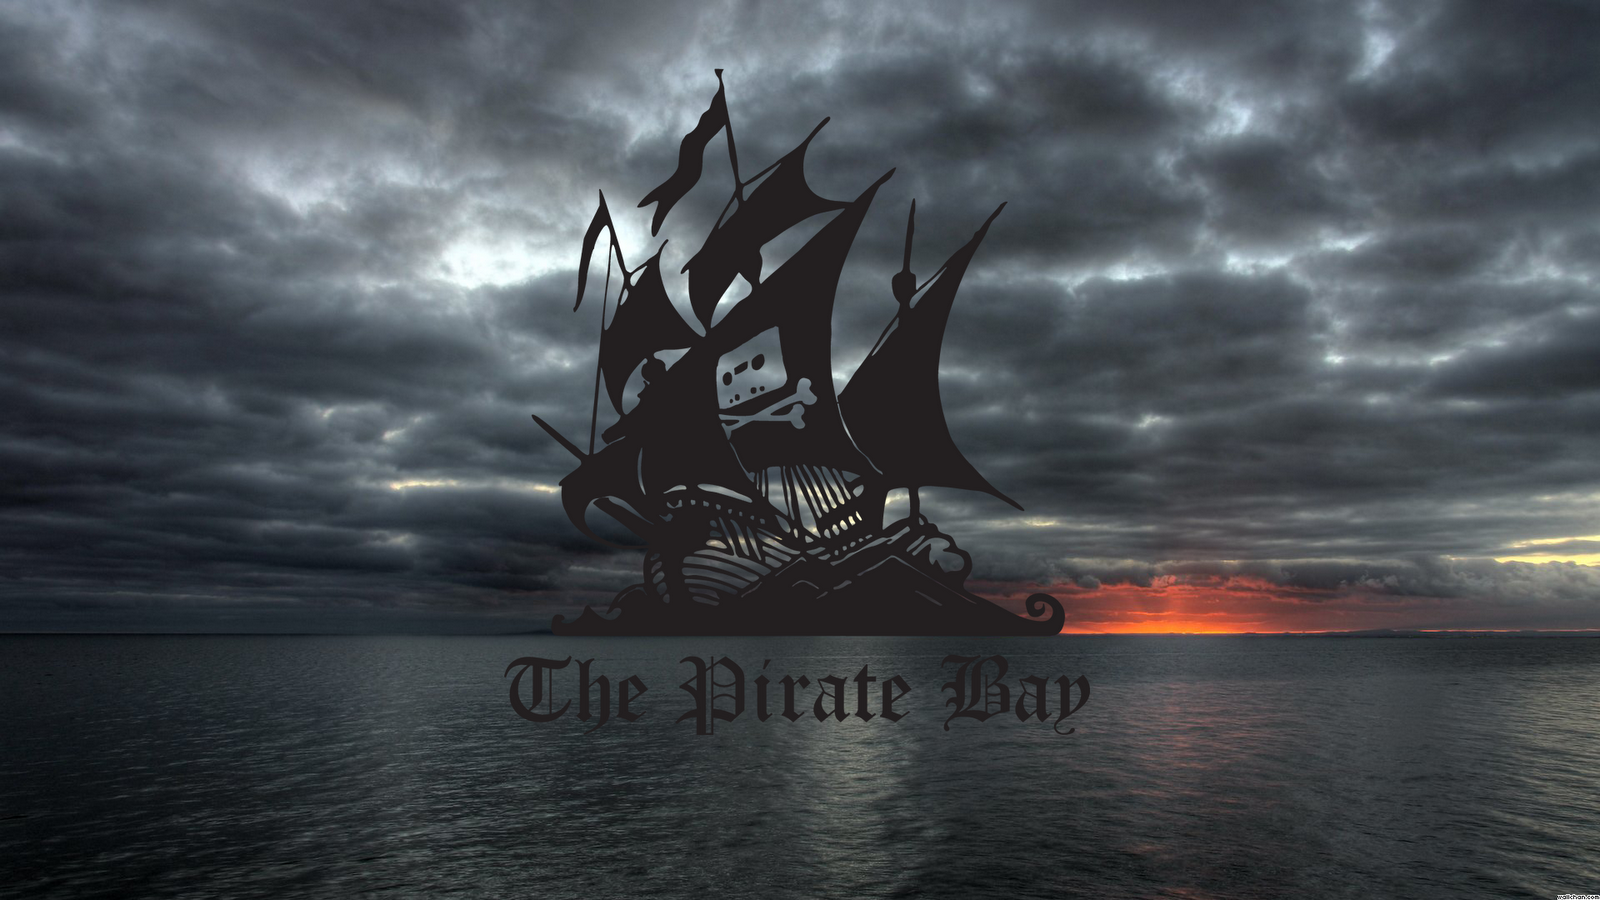 Pirate Bay Digital Pirates Torrent Torrents Website Websites Png